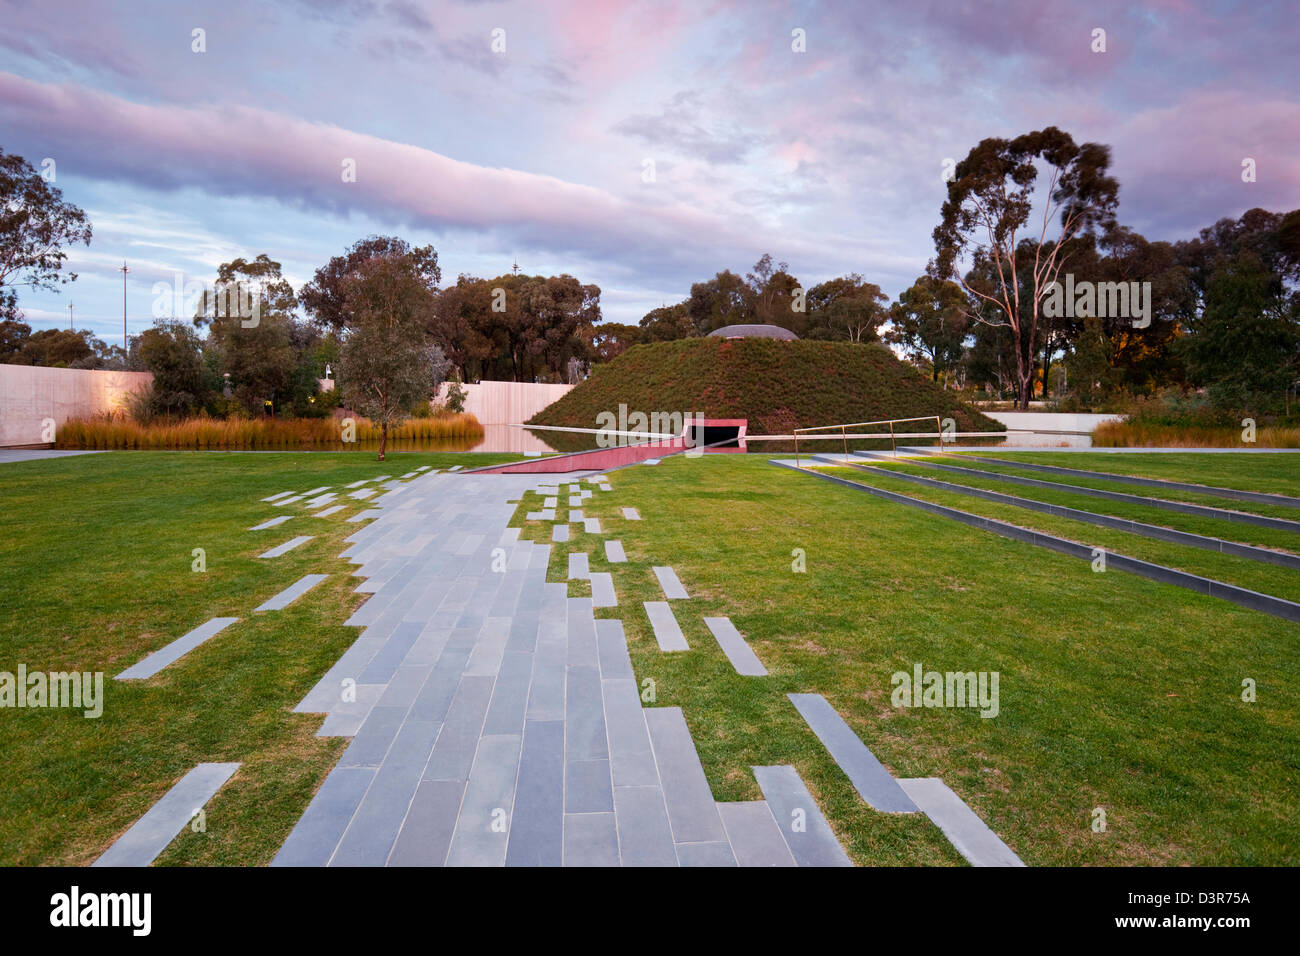 Aussenansicht des "innerhalb ohne" Installation Skulptur von James Turrell.  Canberra, Australian Capital Territory (ACT), Australien Stockfoto